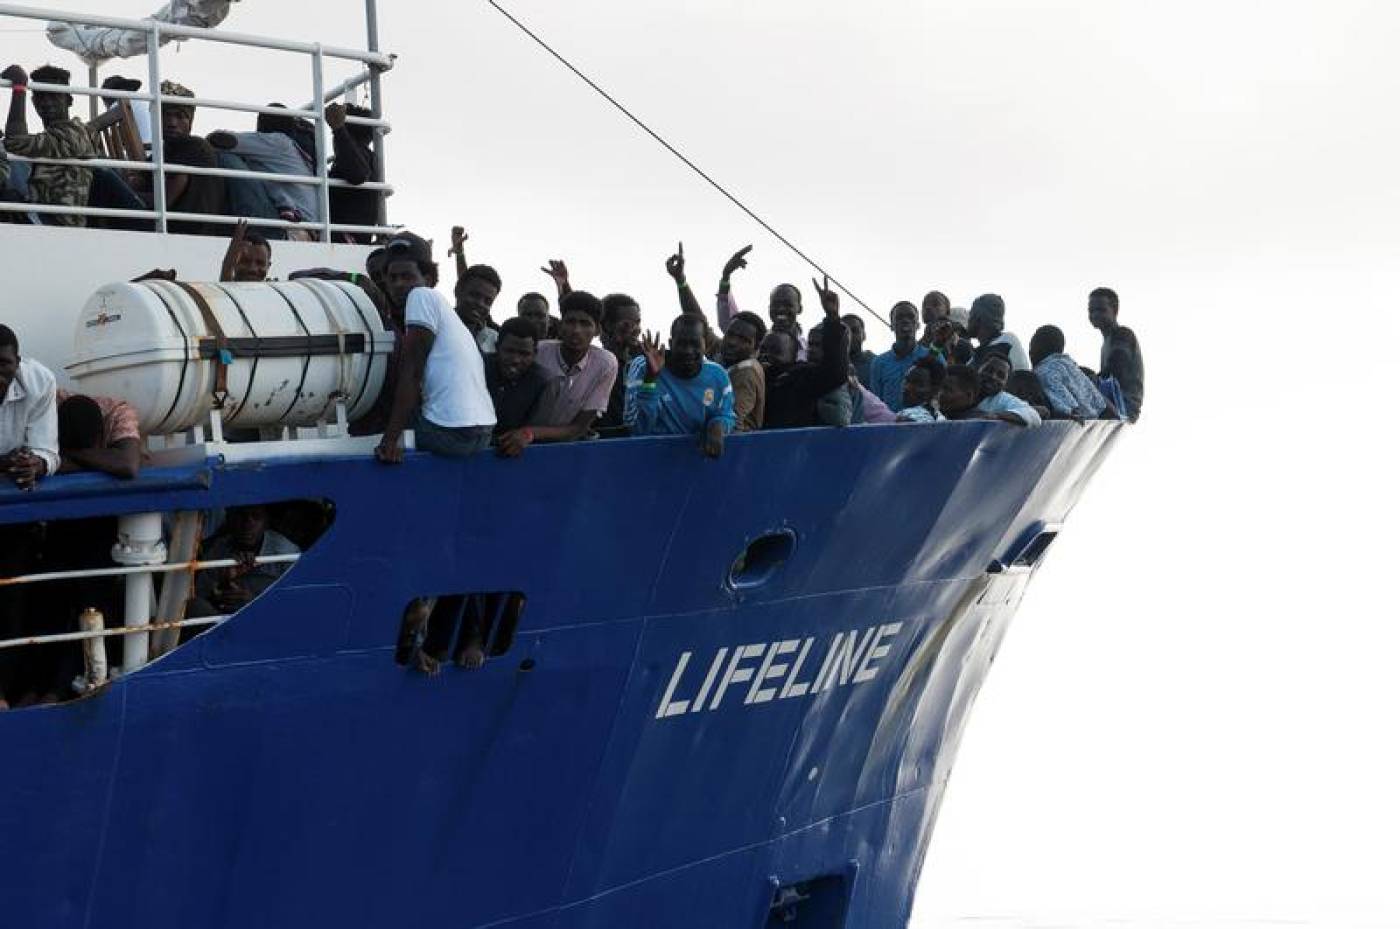 Στη Μάλτα θα δέσει μετά από 6 ημέρες περιπλάνησης το Lifeline με 234 παράνομους μετανάστες